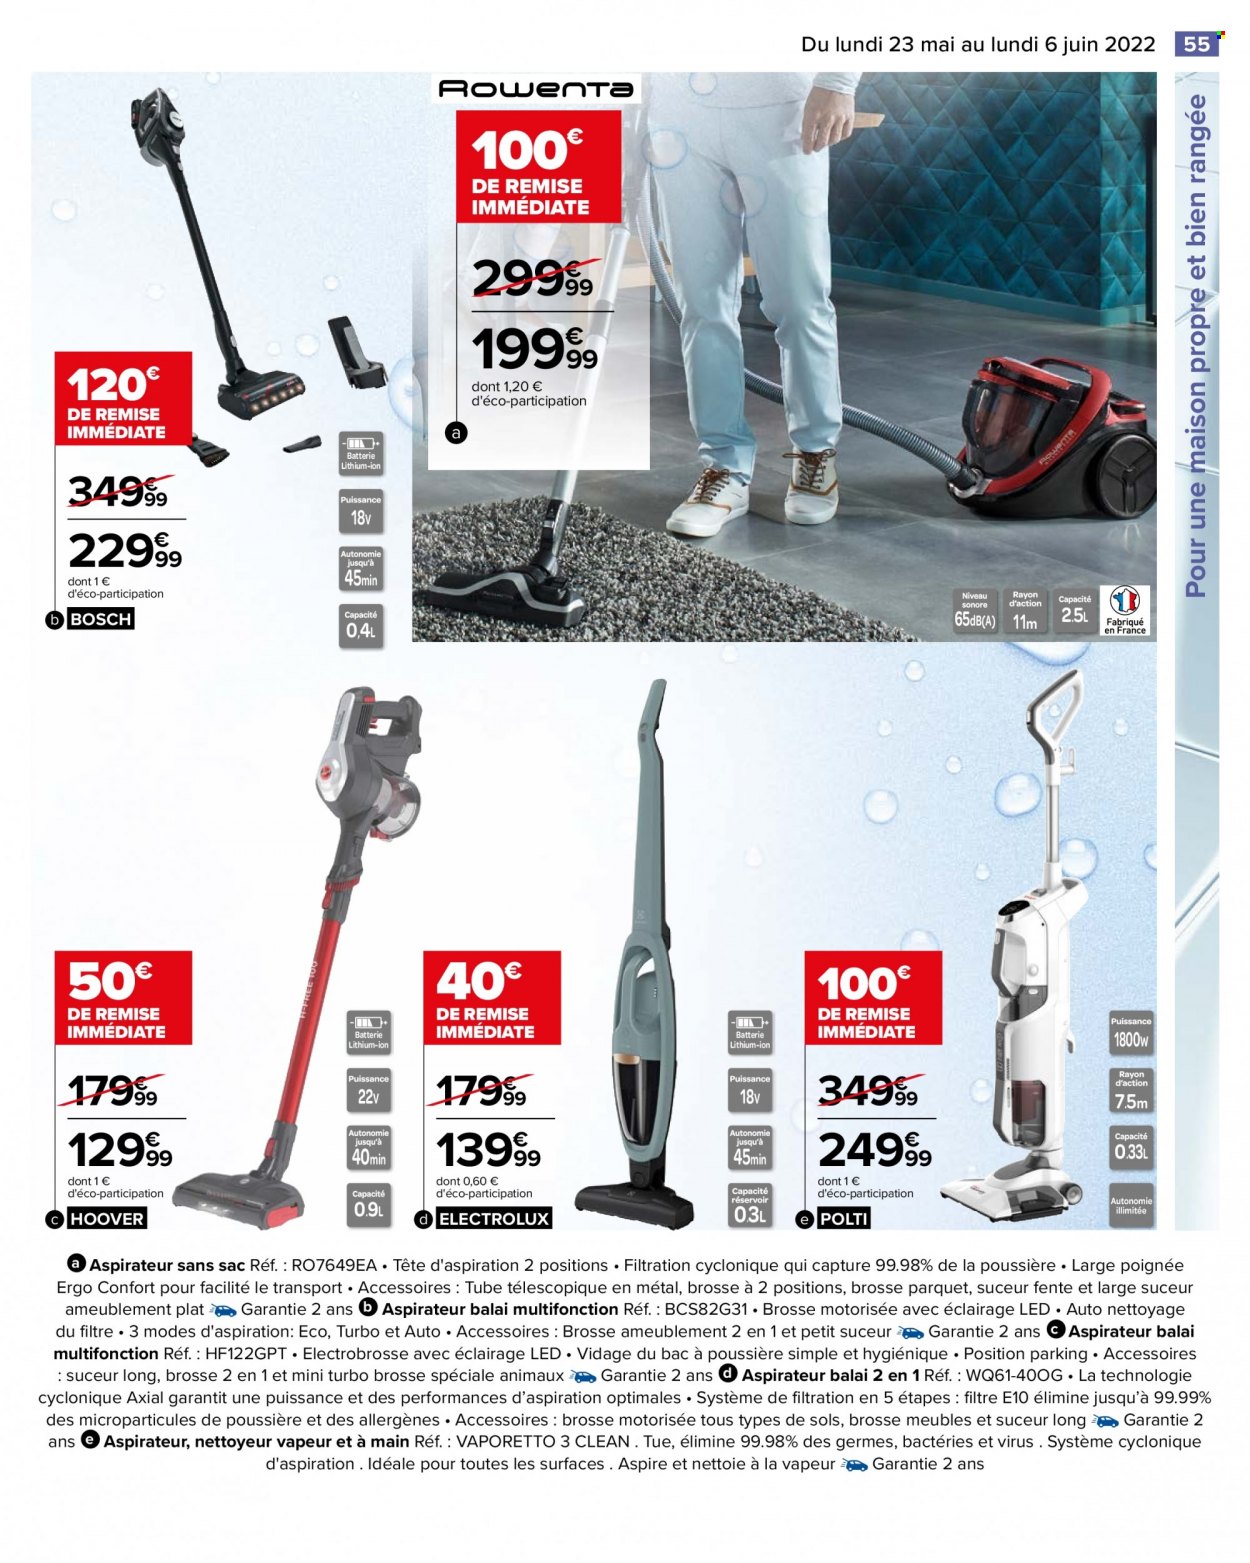 thumbnail - Catalogue Carrefour Hypermarchés - 23/05/2022 - 06/06/2022 - Produits soldés - Bosch, Electrolux, aspirateur, aspirateur balai, aspirateur sans sac, nettoyeur vapeur. Page 59.